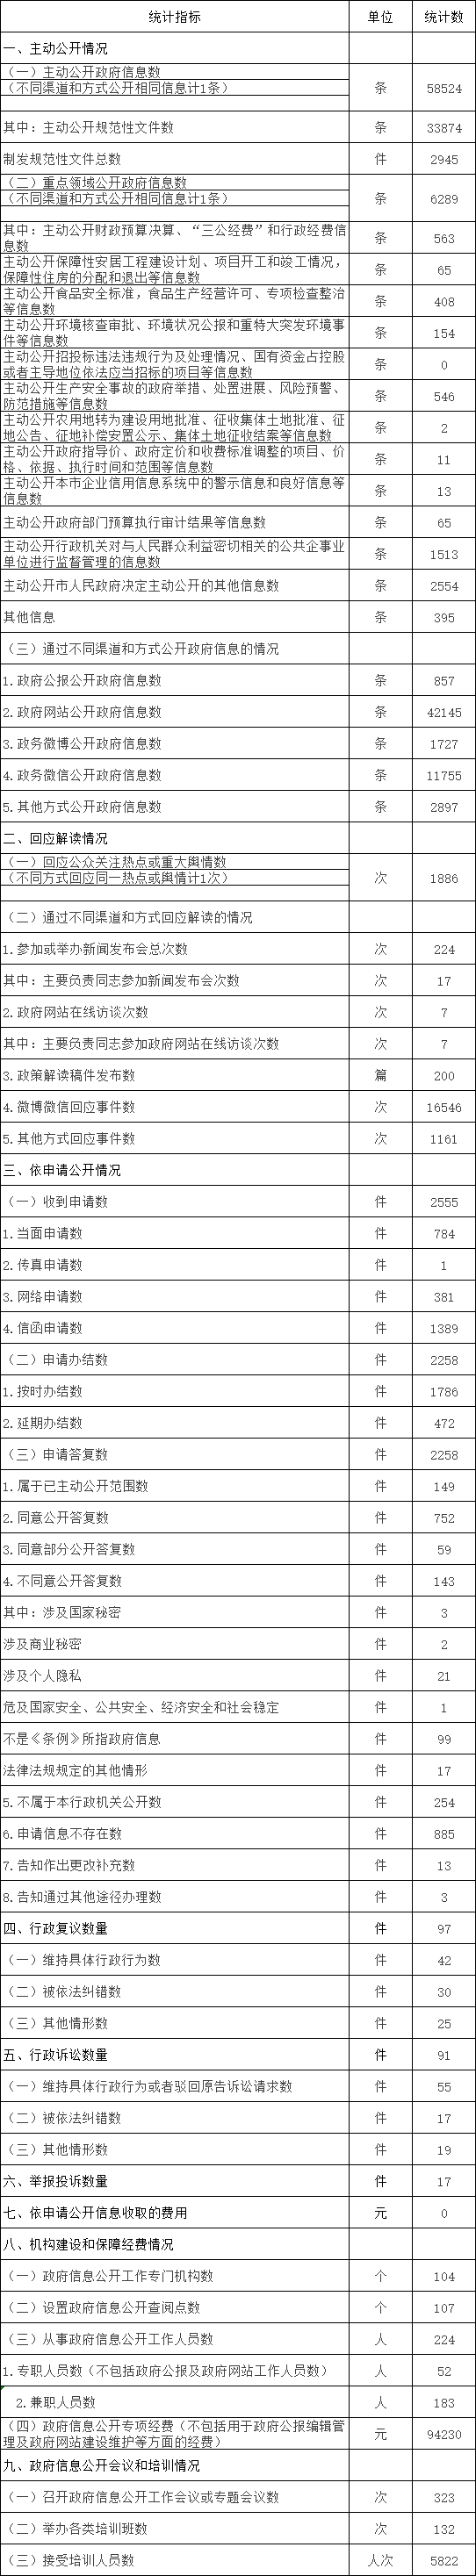 北京市朝陽區人民政府信息公開情況統計表(2017年度)